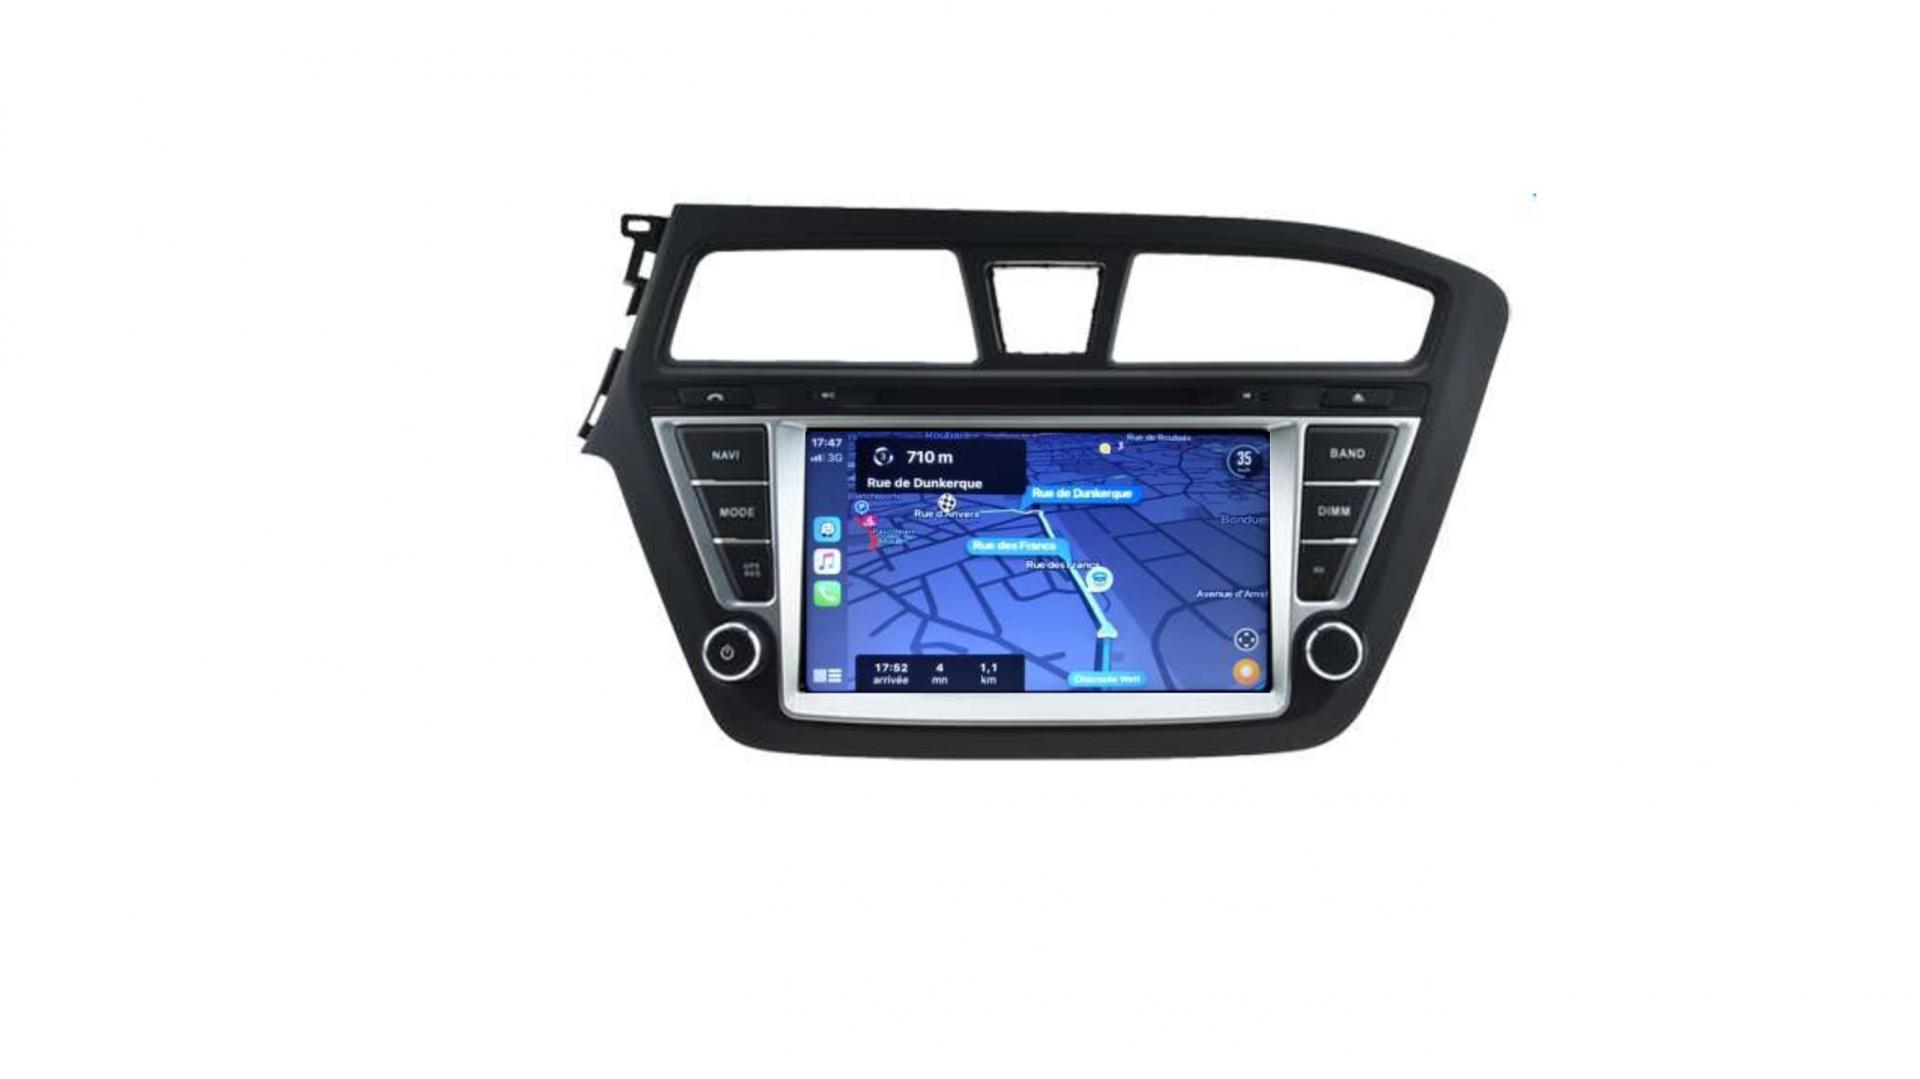 Autoradio androi d auto carplay gps bluetooth hyundai i20 depuis 2015 3